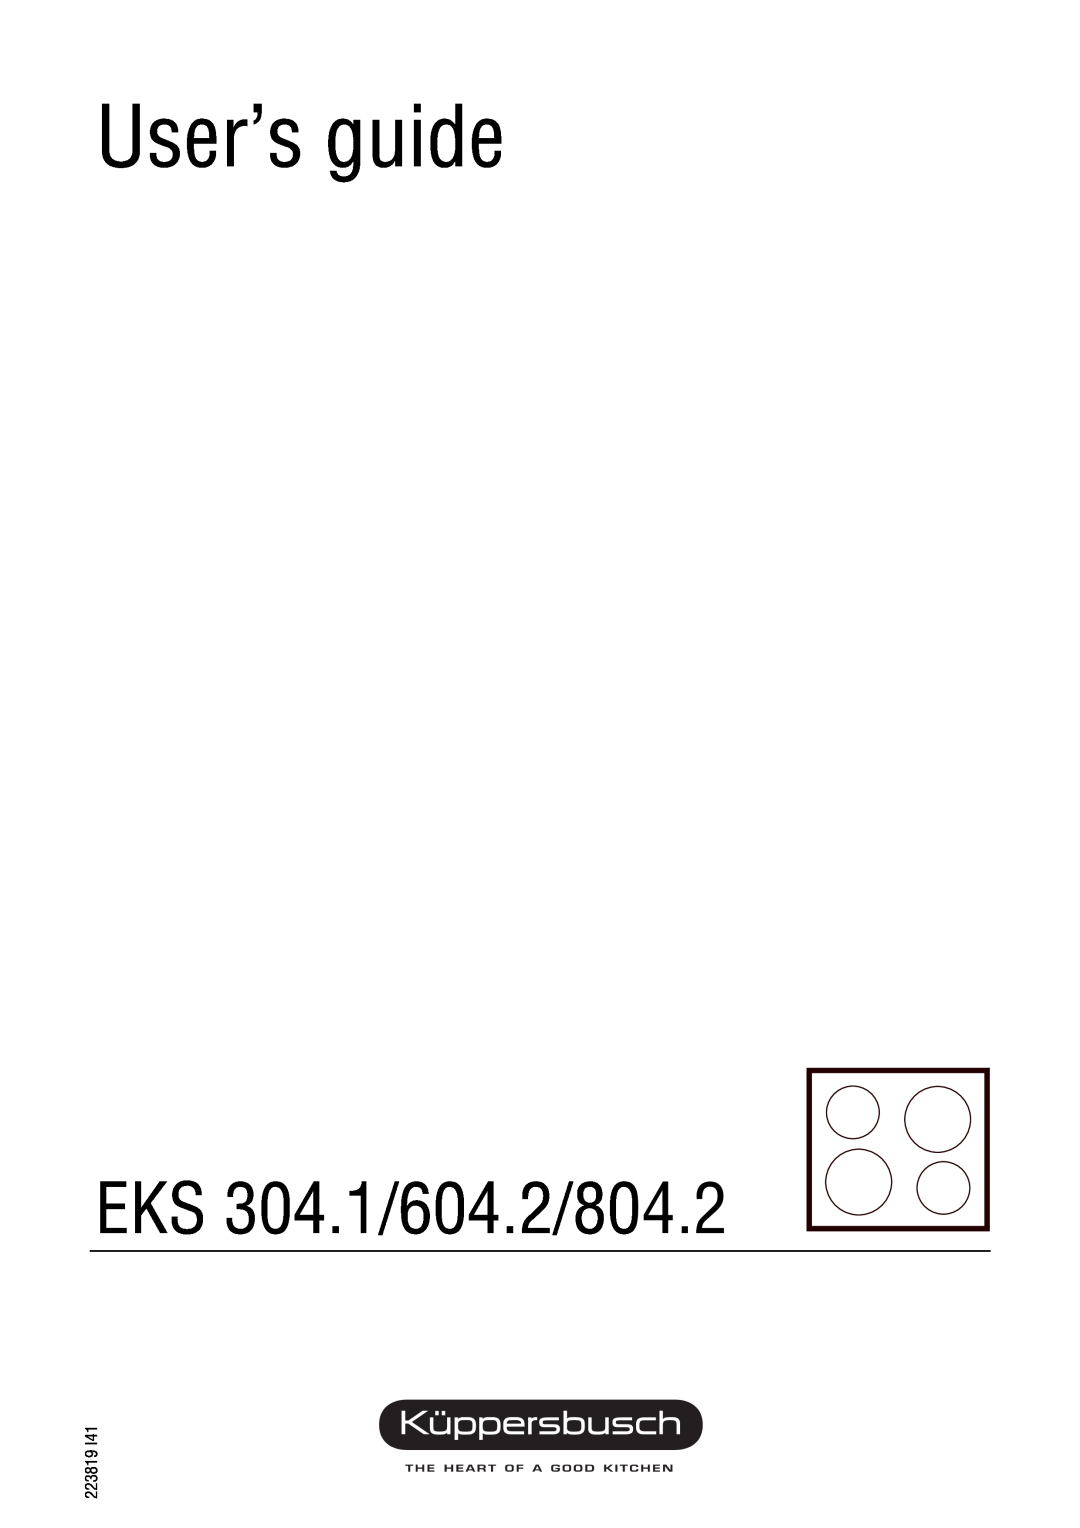 Kuppersbusch USA EKS 604.2, EKS 804.2 manual User’s guide, EKS 304.1/604.2/804.2 